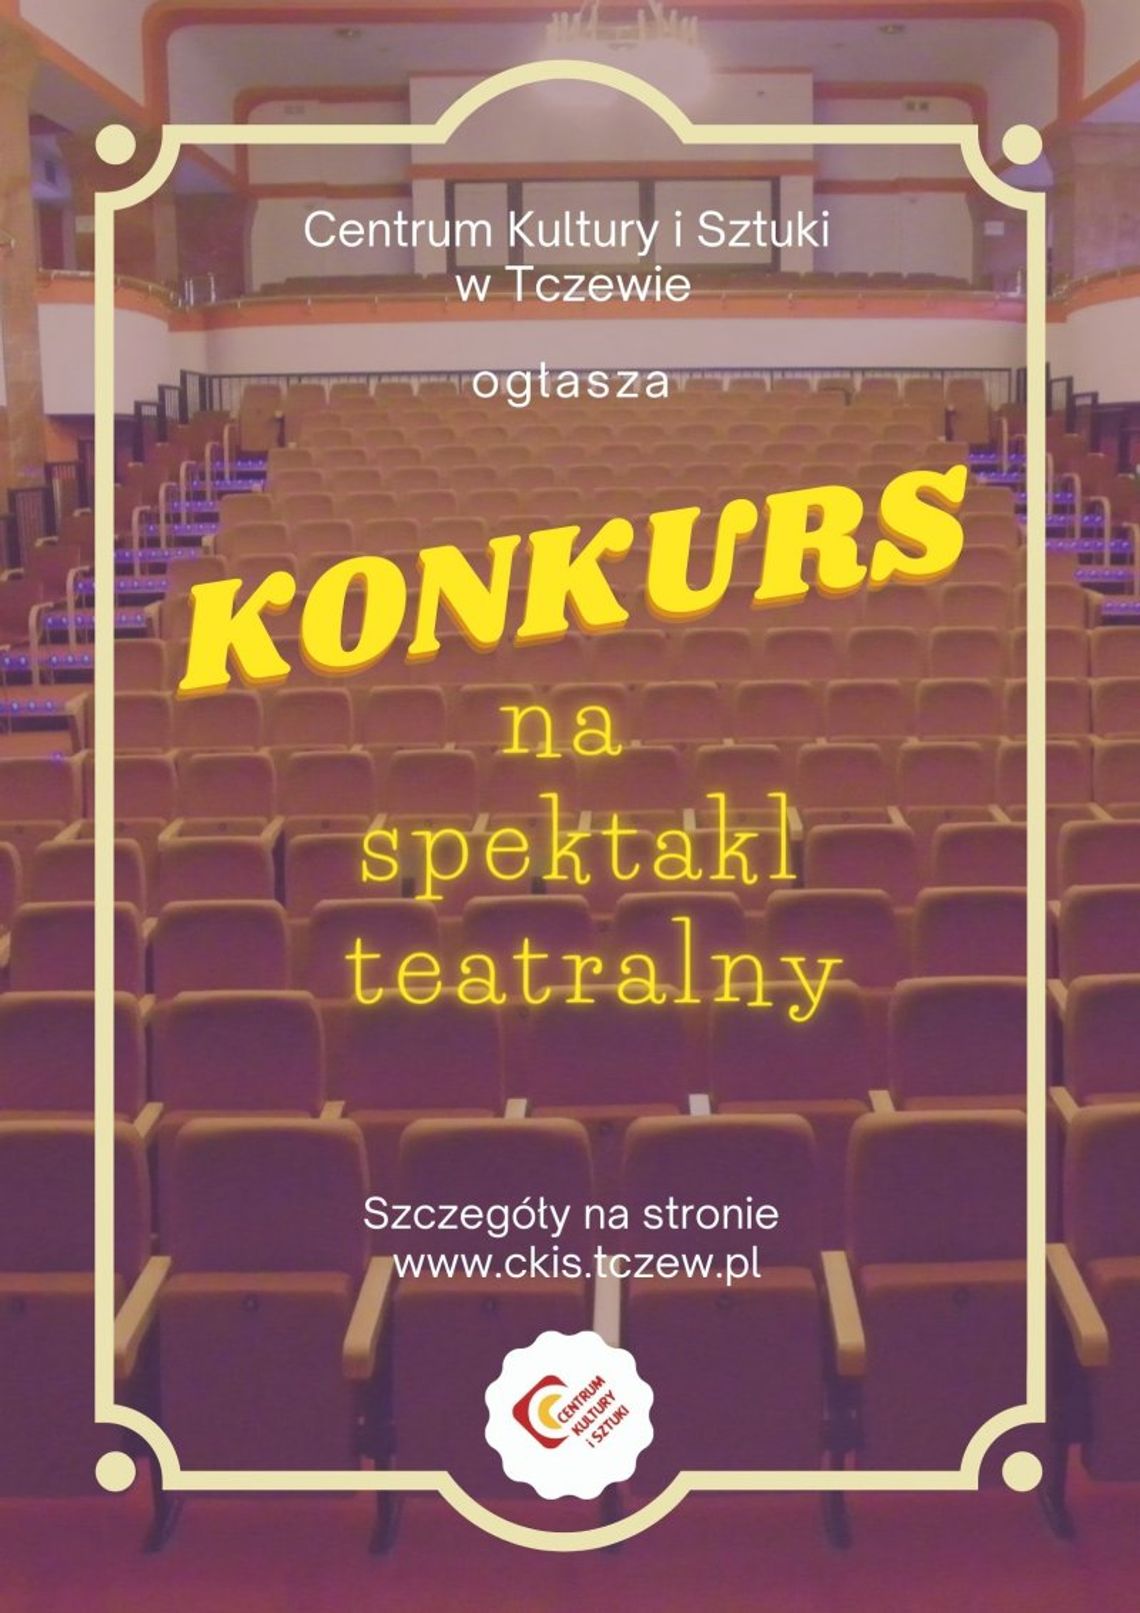 Zrealizuj spektakl teatralny nawet za 10 tysięcy zł! Konkurs CKiS w Tczewie